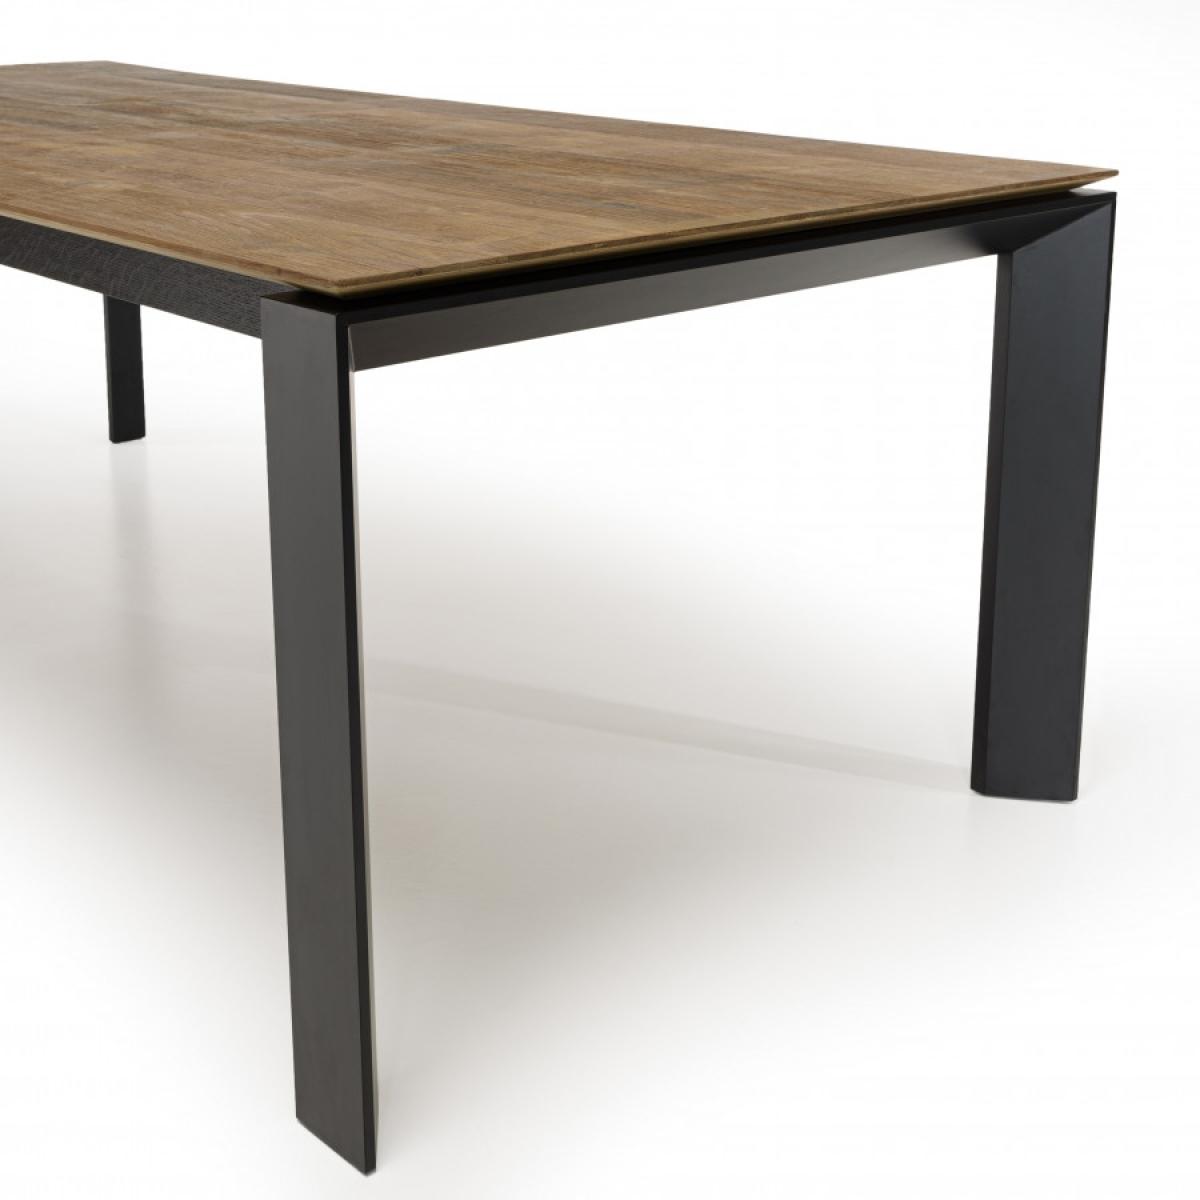 Table à manger bois chêne pieds croisés métal noir L220 MADISON